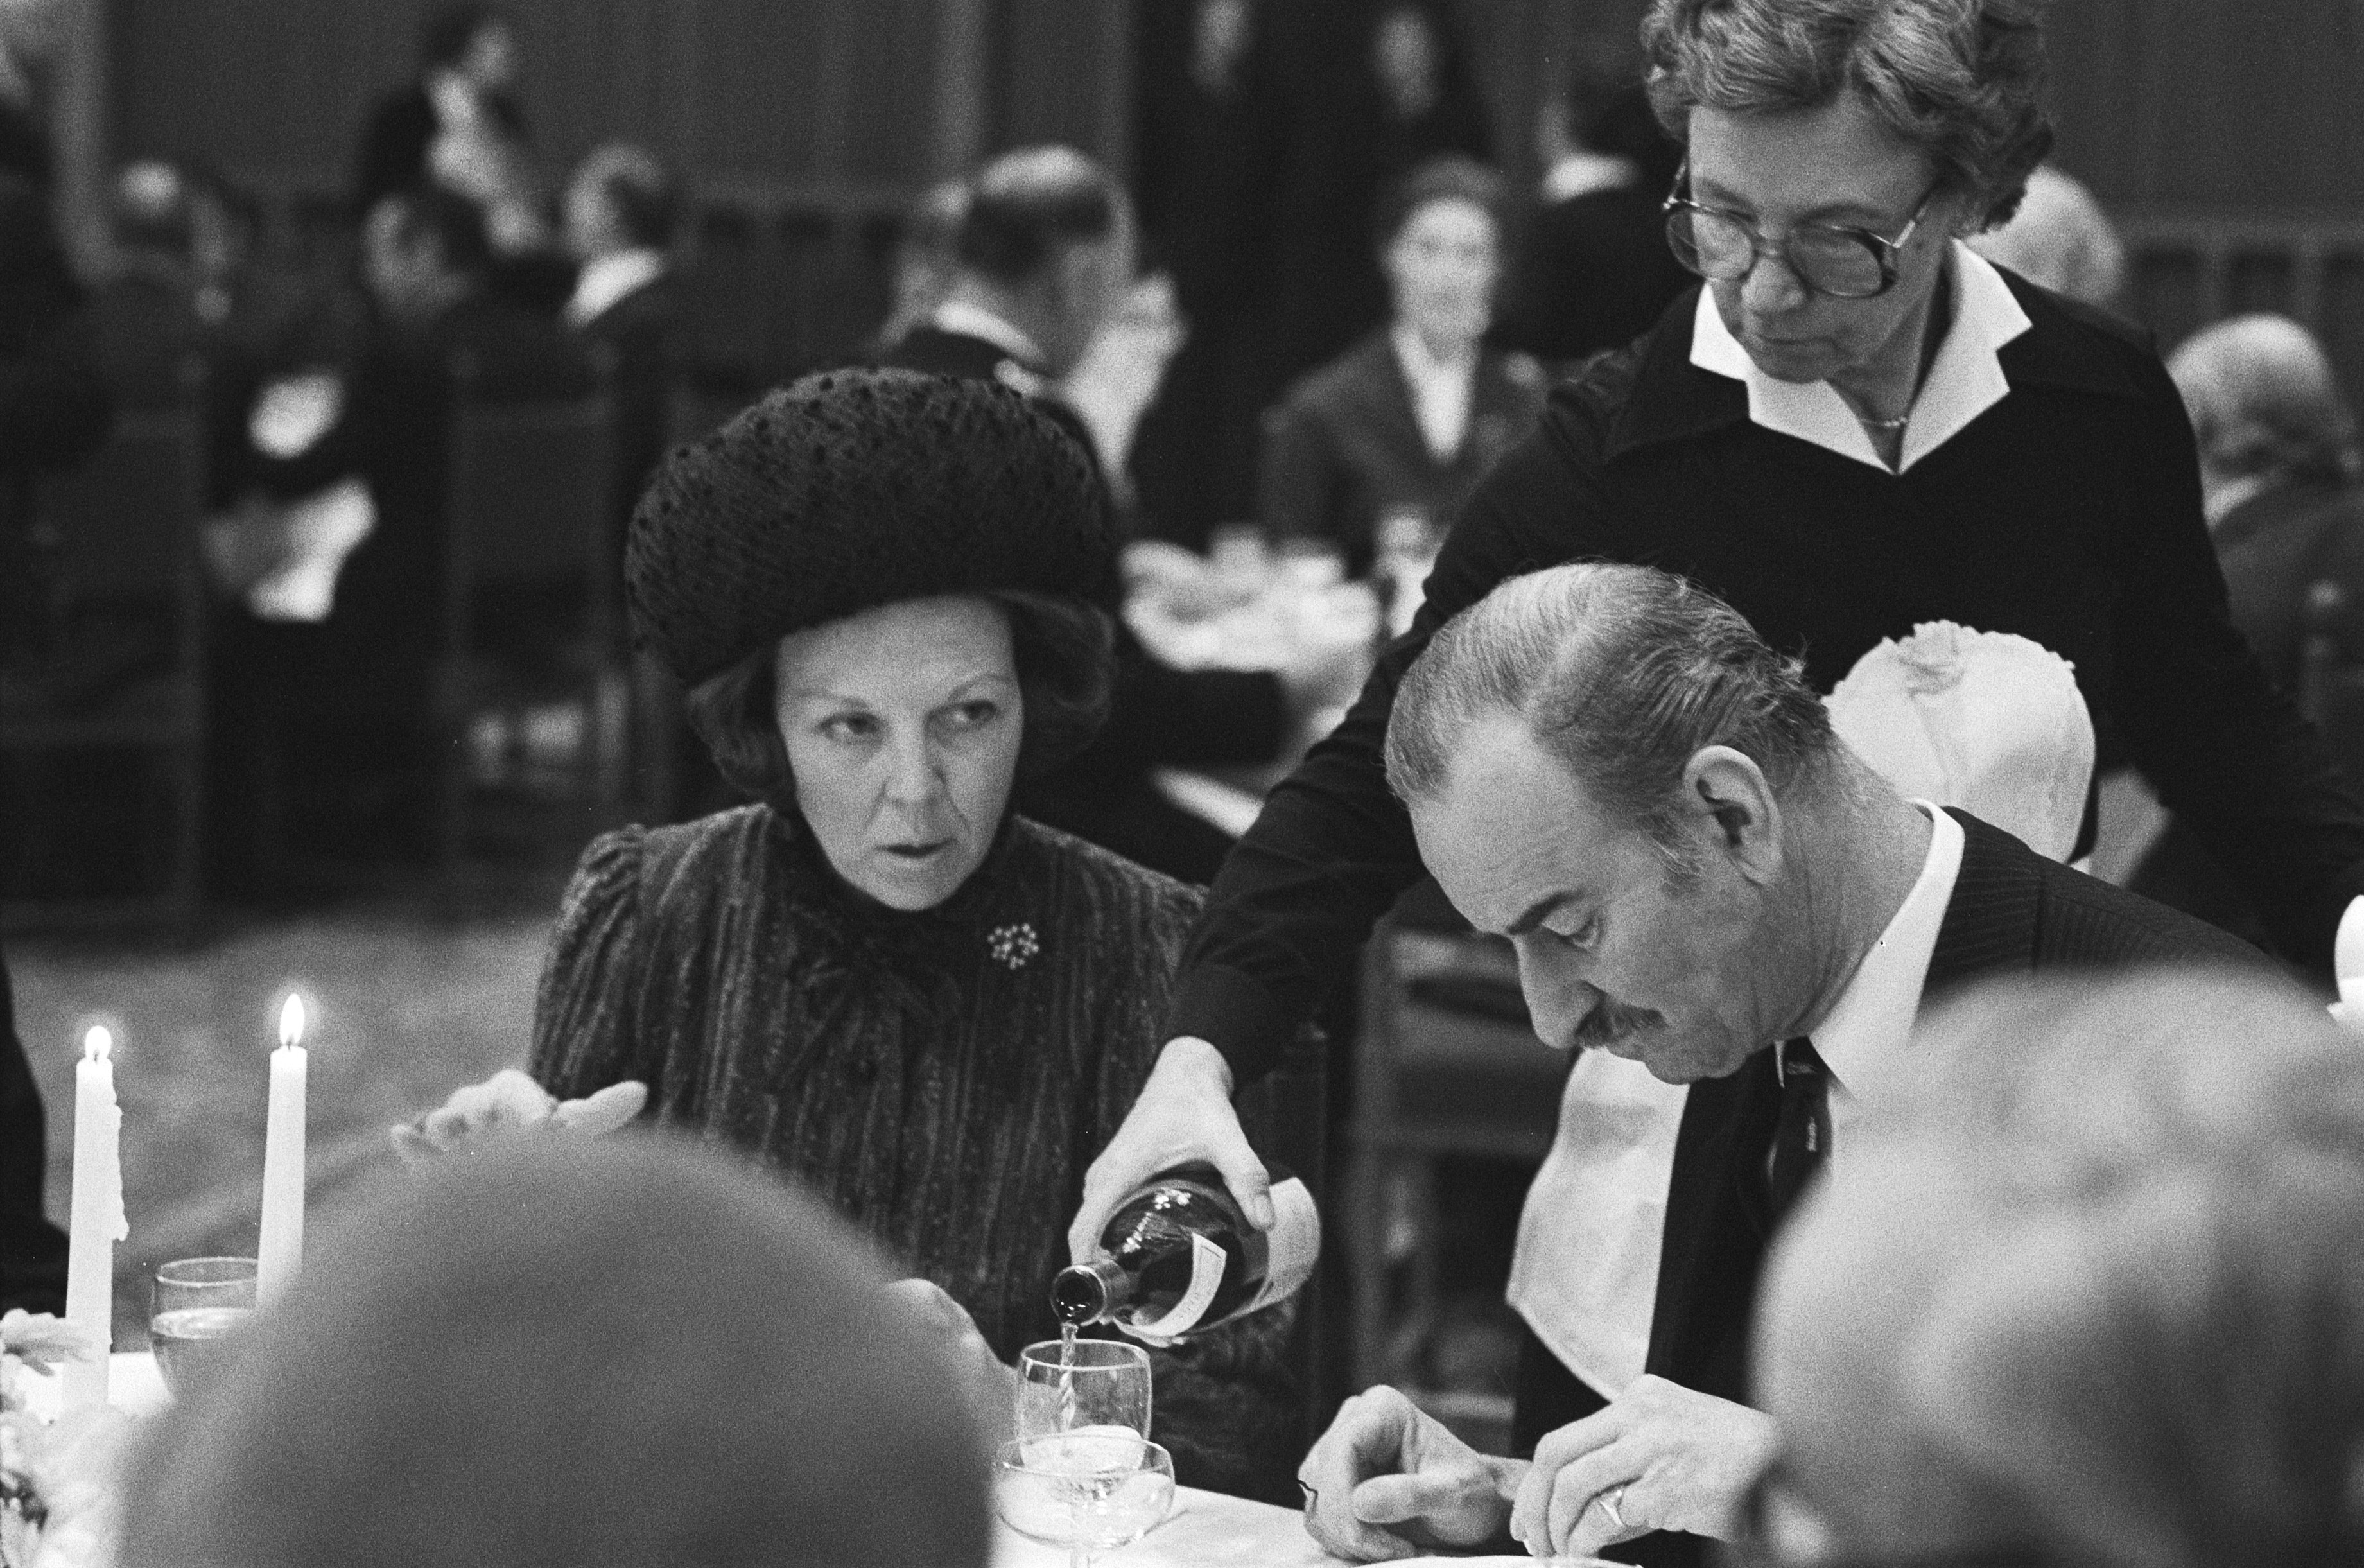 Minister van Buitenlandse Zaken Van der Klaauw met prinses Beatrix in 1980. Nationaal Archief via Wikimediacommons